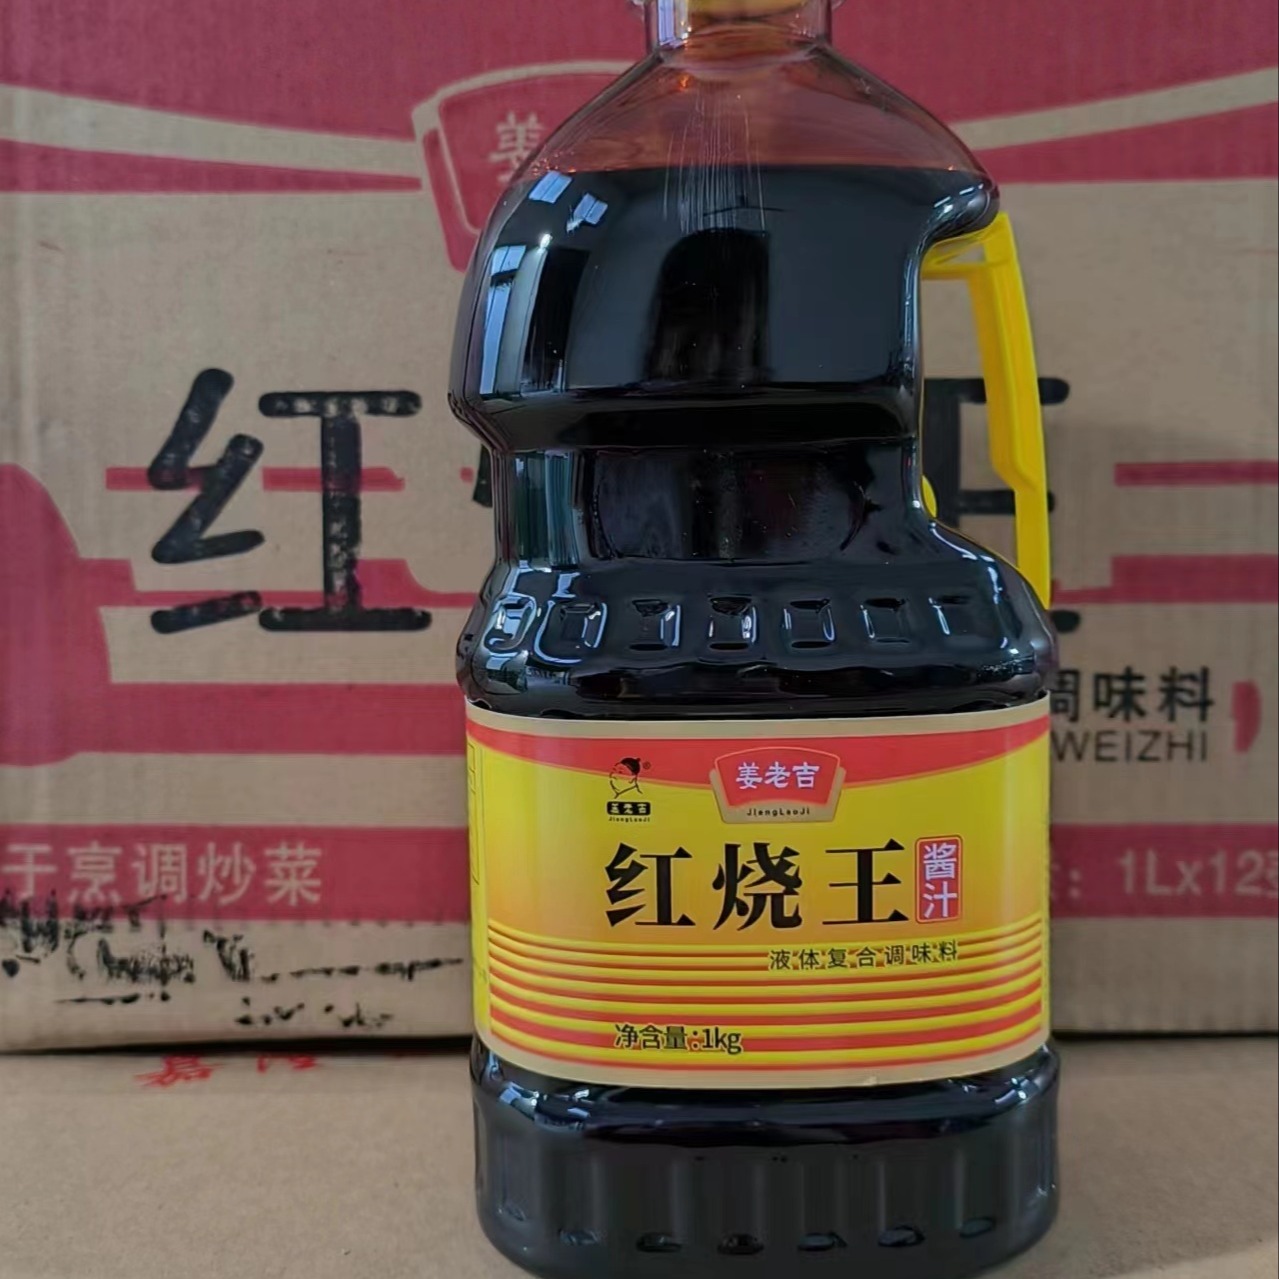 姜老吉 厂家直销 红烧王酱油批发 厨用家用 1kg老抽批发